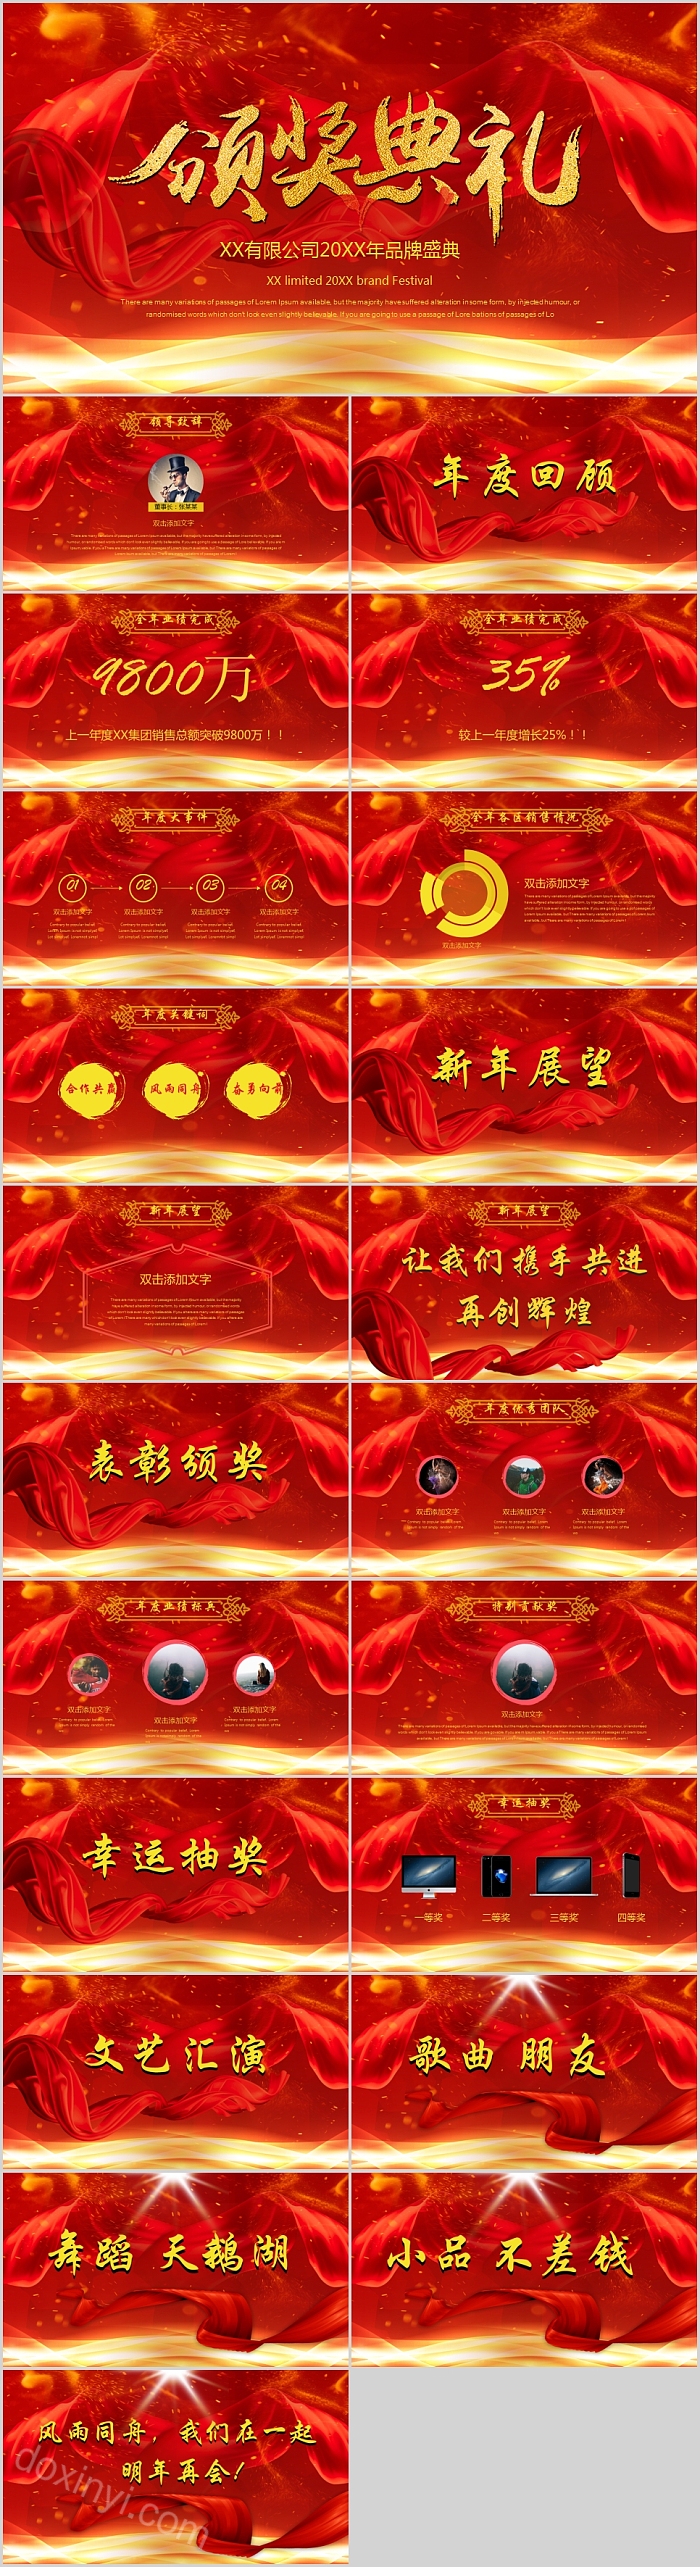 中国风红色大气年会颁奖典礼PPT模板